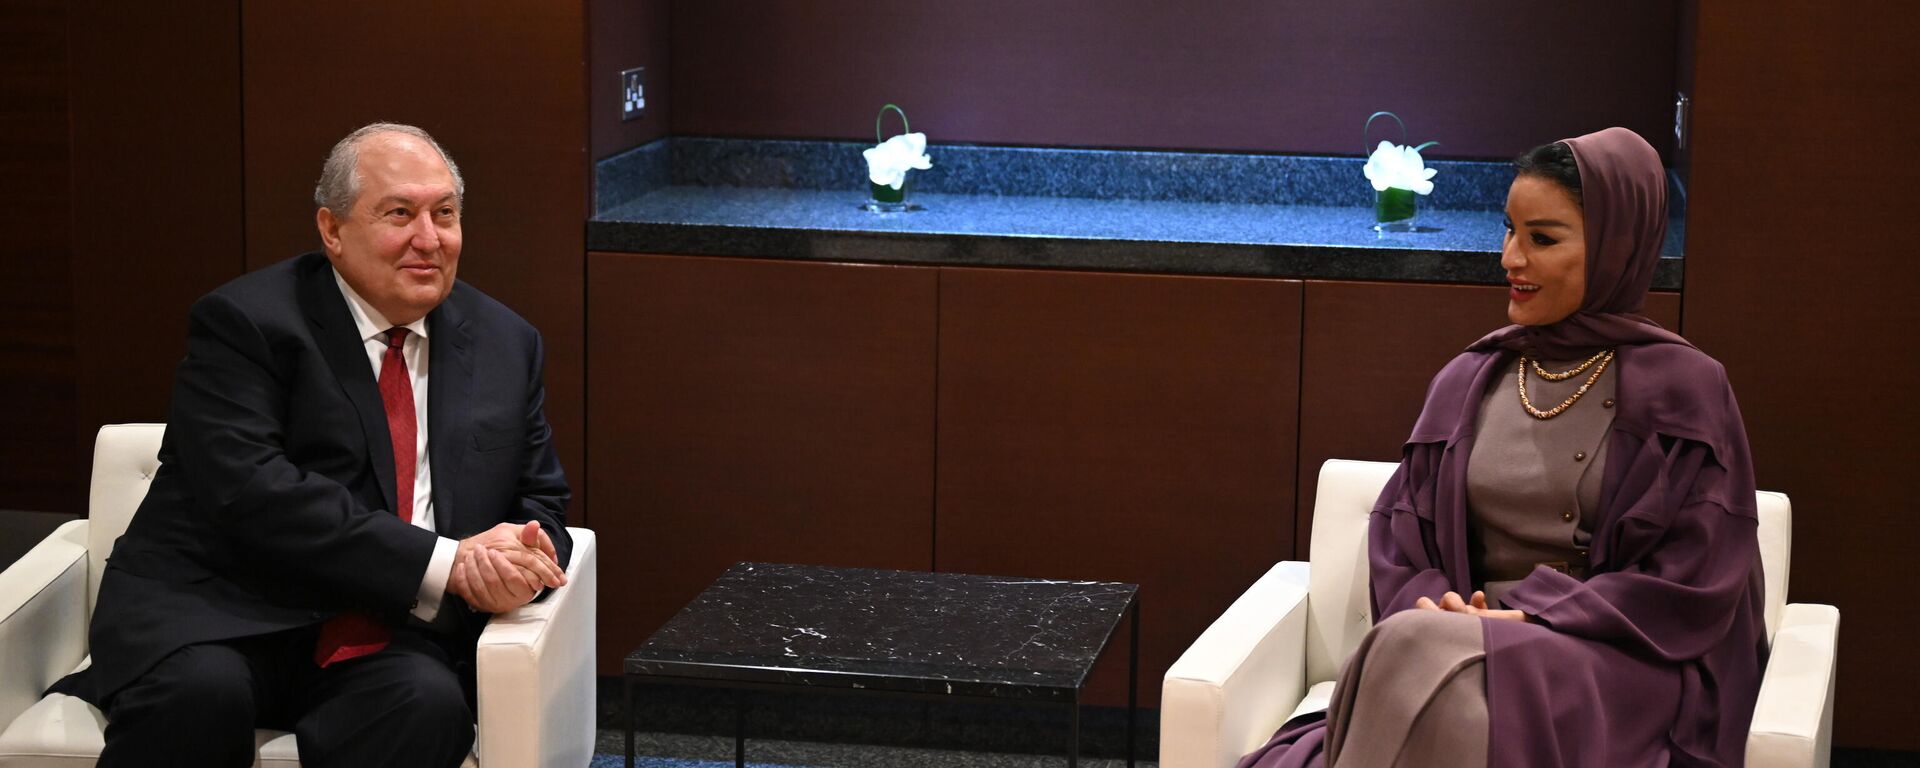 Հանրապետության նախագահ Արմեն Սարգսյանը հանդիպել է Կատարի հիմնադրամի և Education Above All հիմնադրամի նախագահ, ՄԱԿ-ի կայուն զարգացման նպատակների պաշտպան, շեյխուհի Մոզա բինթ Նասեր ալ-Միսնեդի հետ - Sputnik Արմենիա, 1920, 09.12.2021